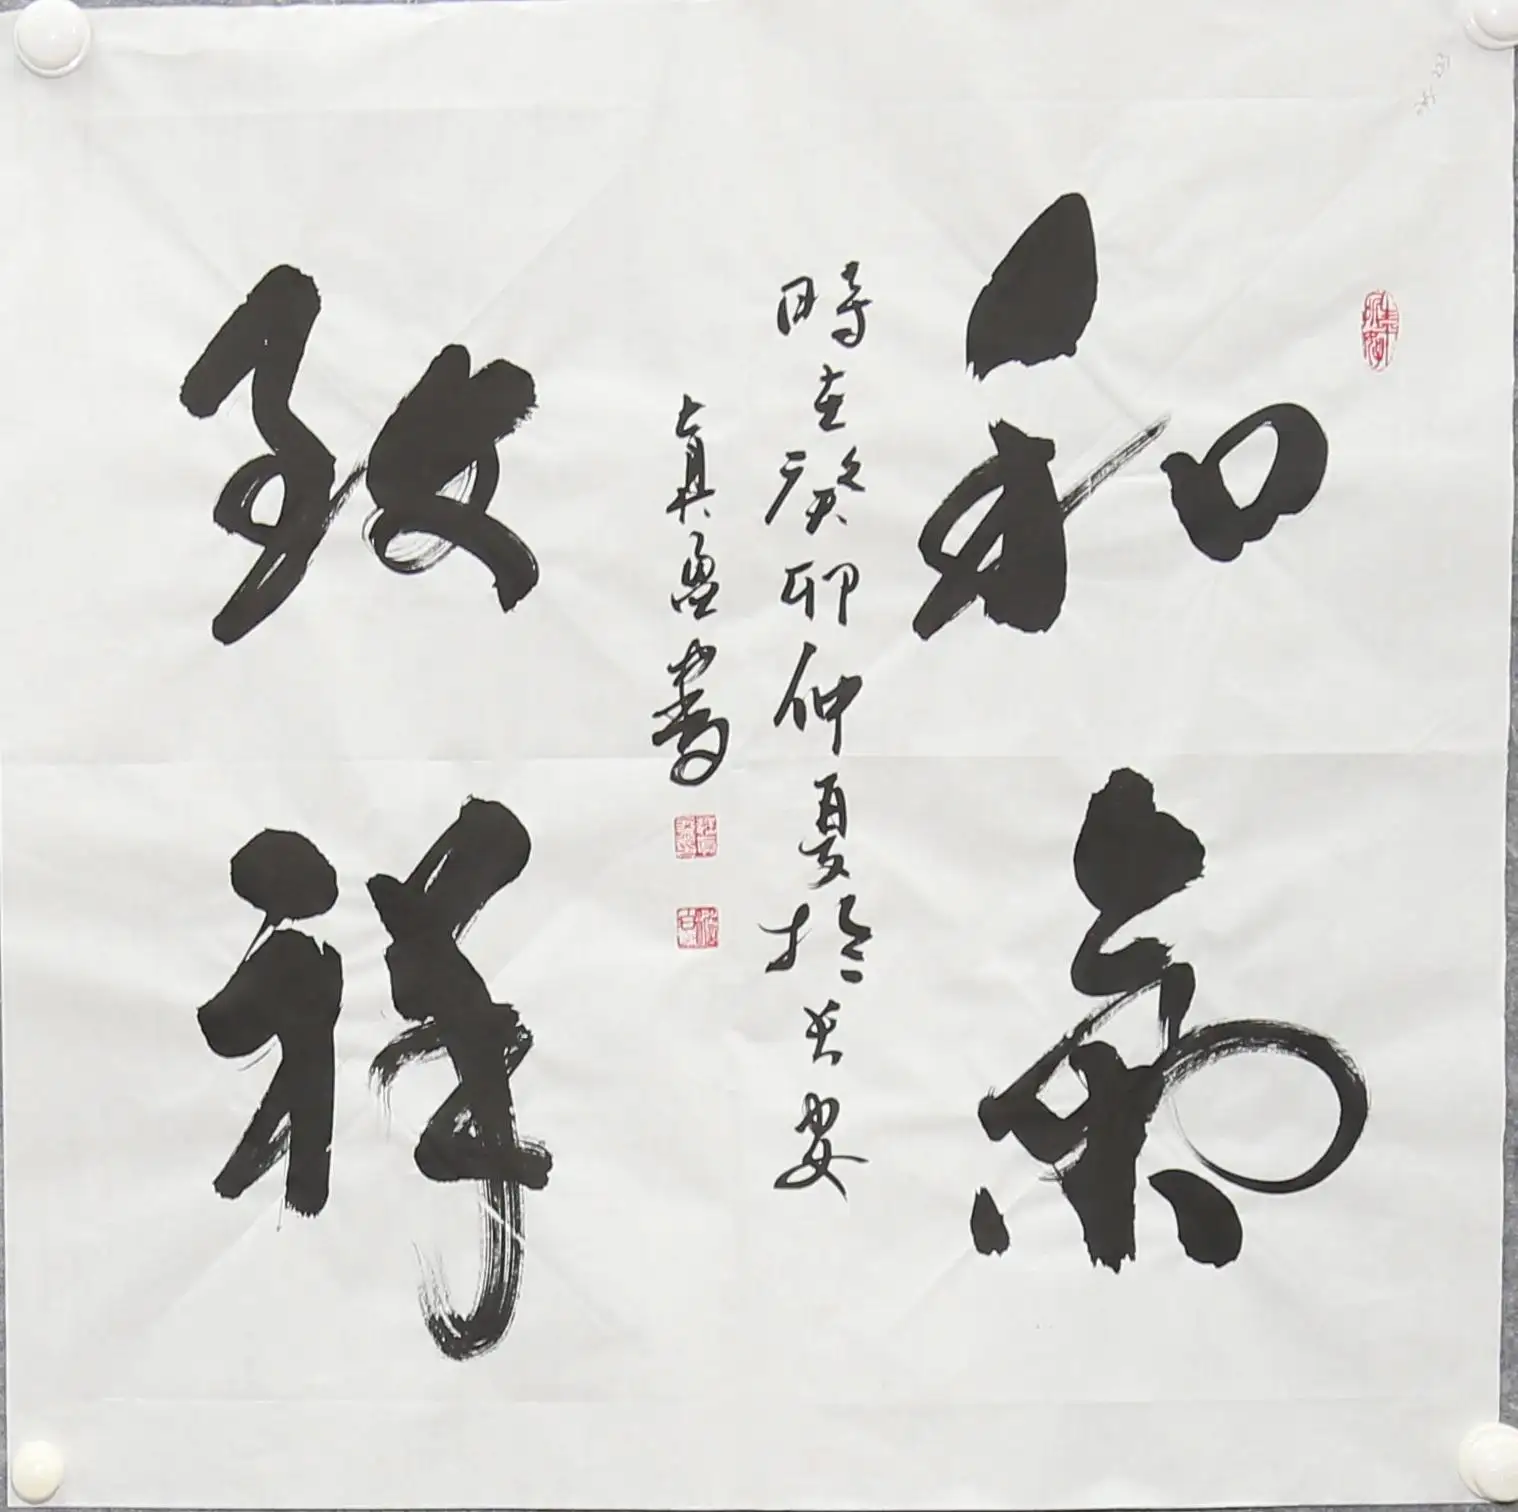 Оптовая продажа бумаги искусство каллиграфии картины Современная китайская каллиграфия живопись